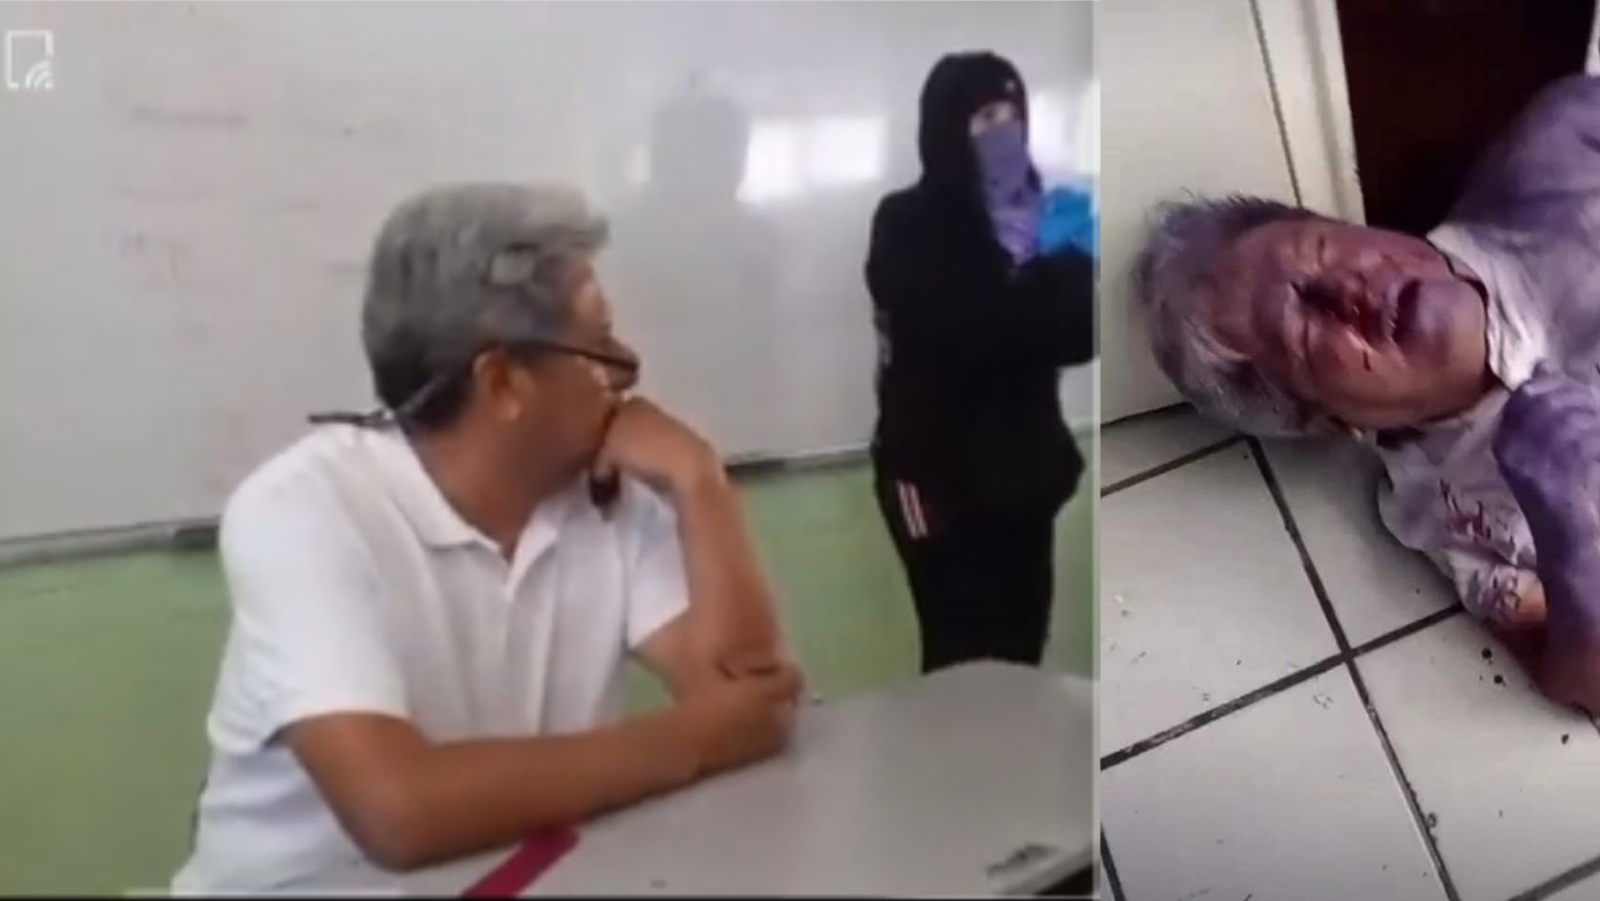 Alumnas golpean a profesor de IPN acusado de acoso: VIDEO